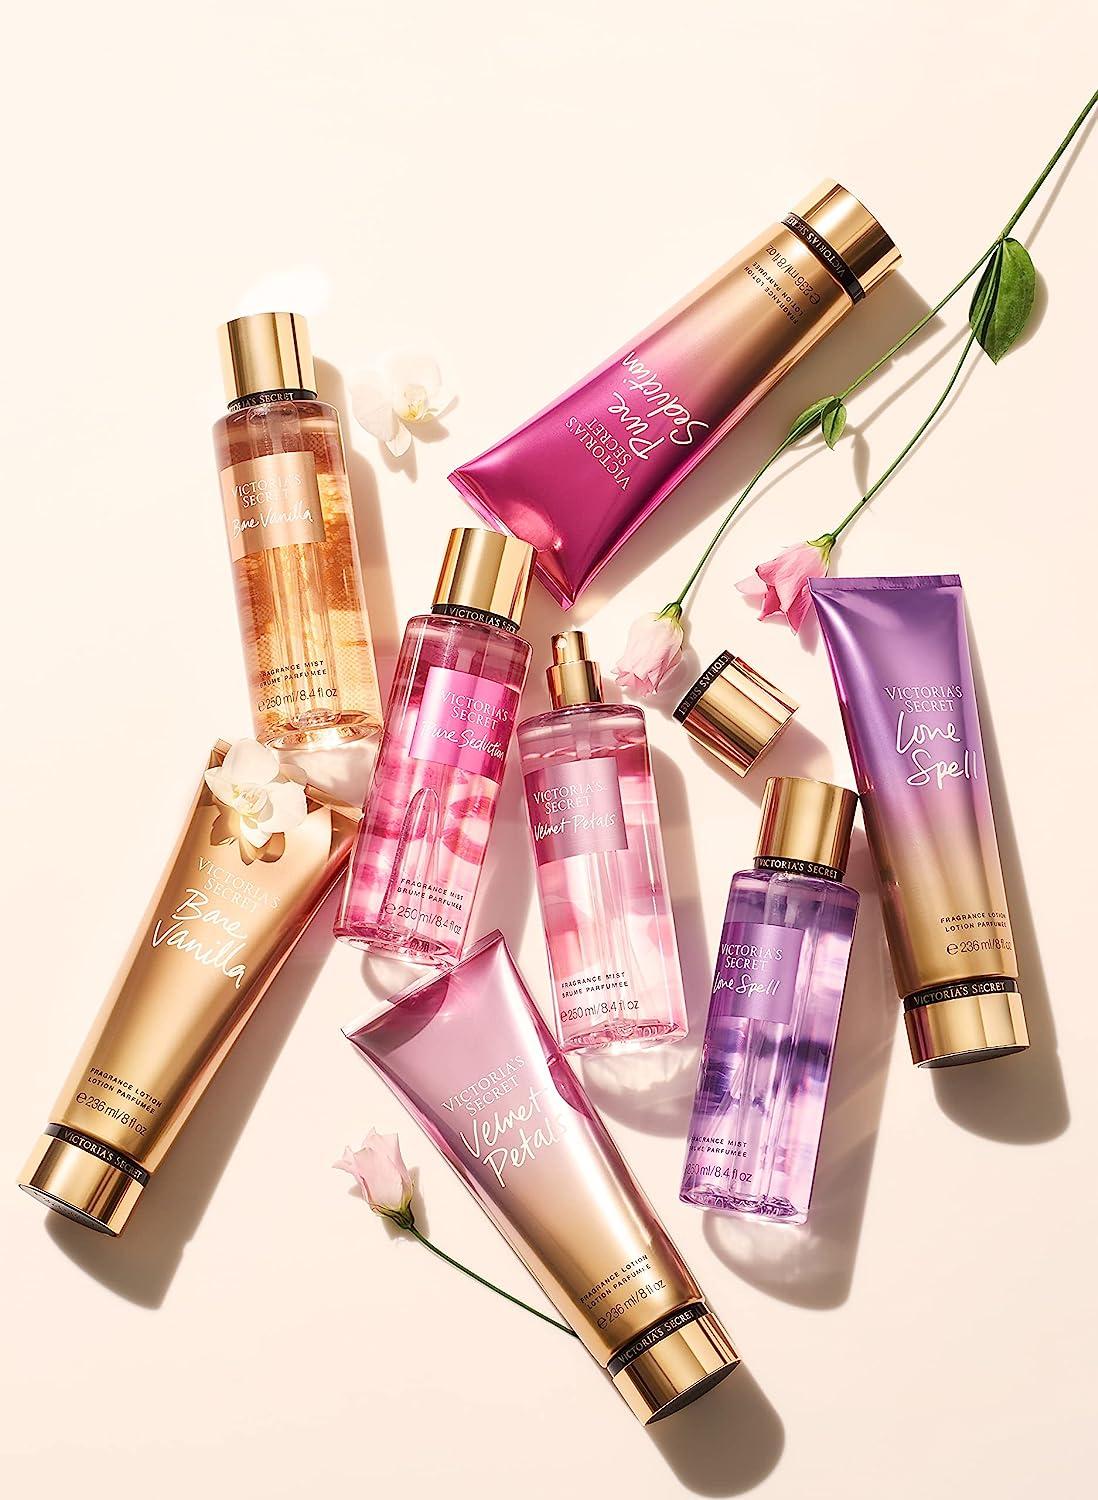 Victorias Secret Velvet Petals Fragrance Set : : Beauty & Personal  Care